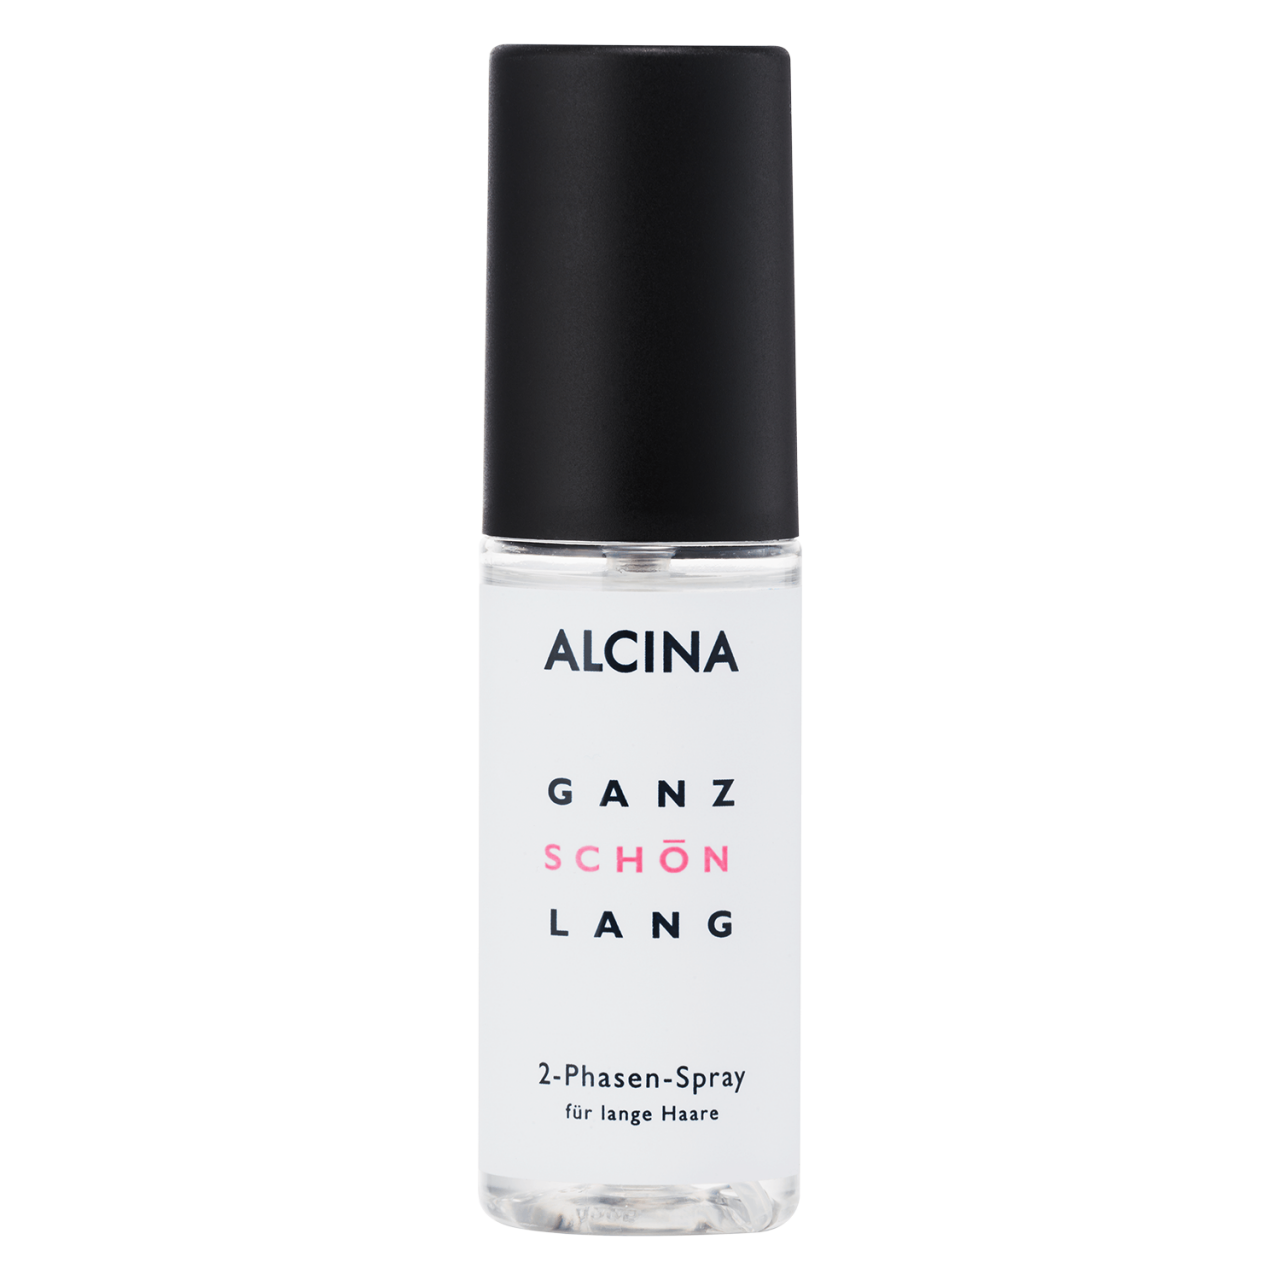 Ganz Schön Lang - 2-Phasen-Spray für lange Haare von Alcina